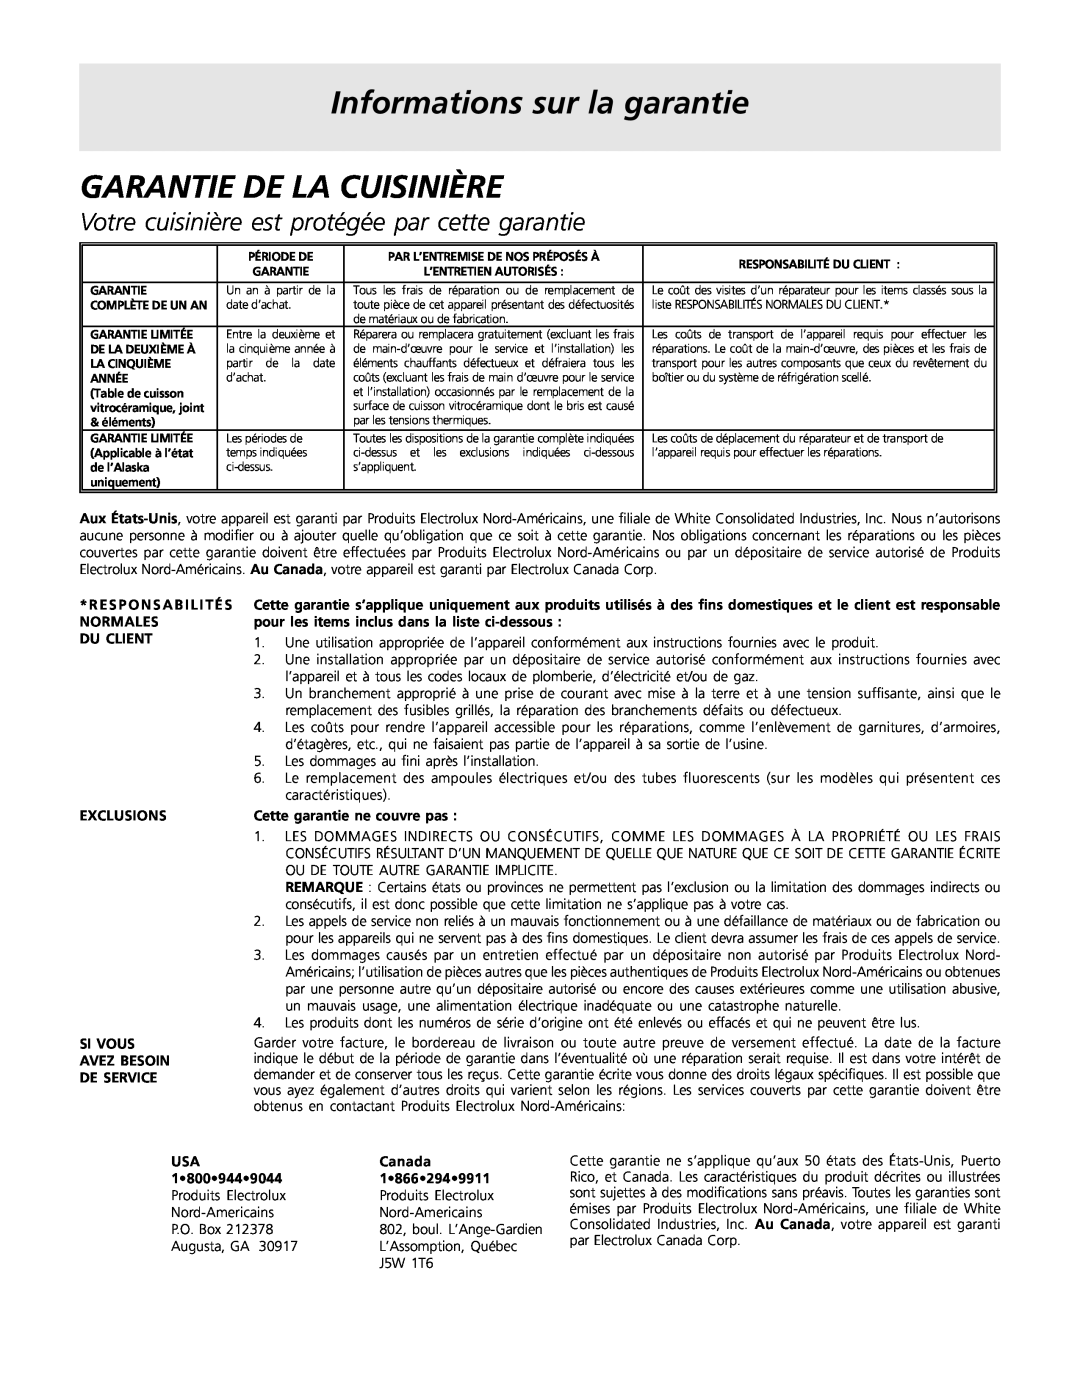 Frigidaire 318200858 Informations sur la garantie, Garantie De La Cuisinière, De Service, Cette garantie ne couvre pas 